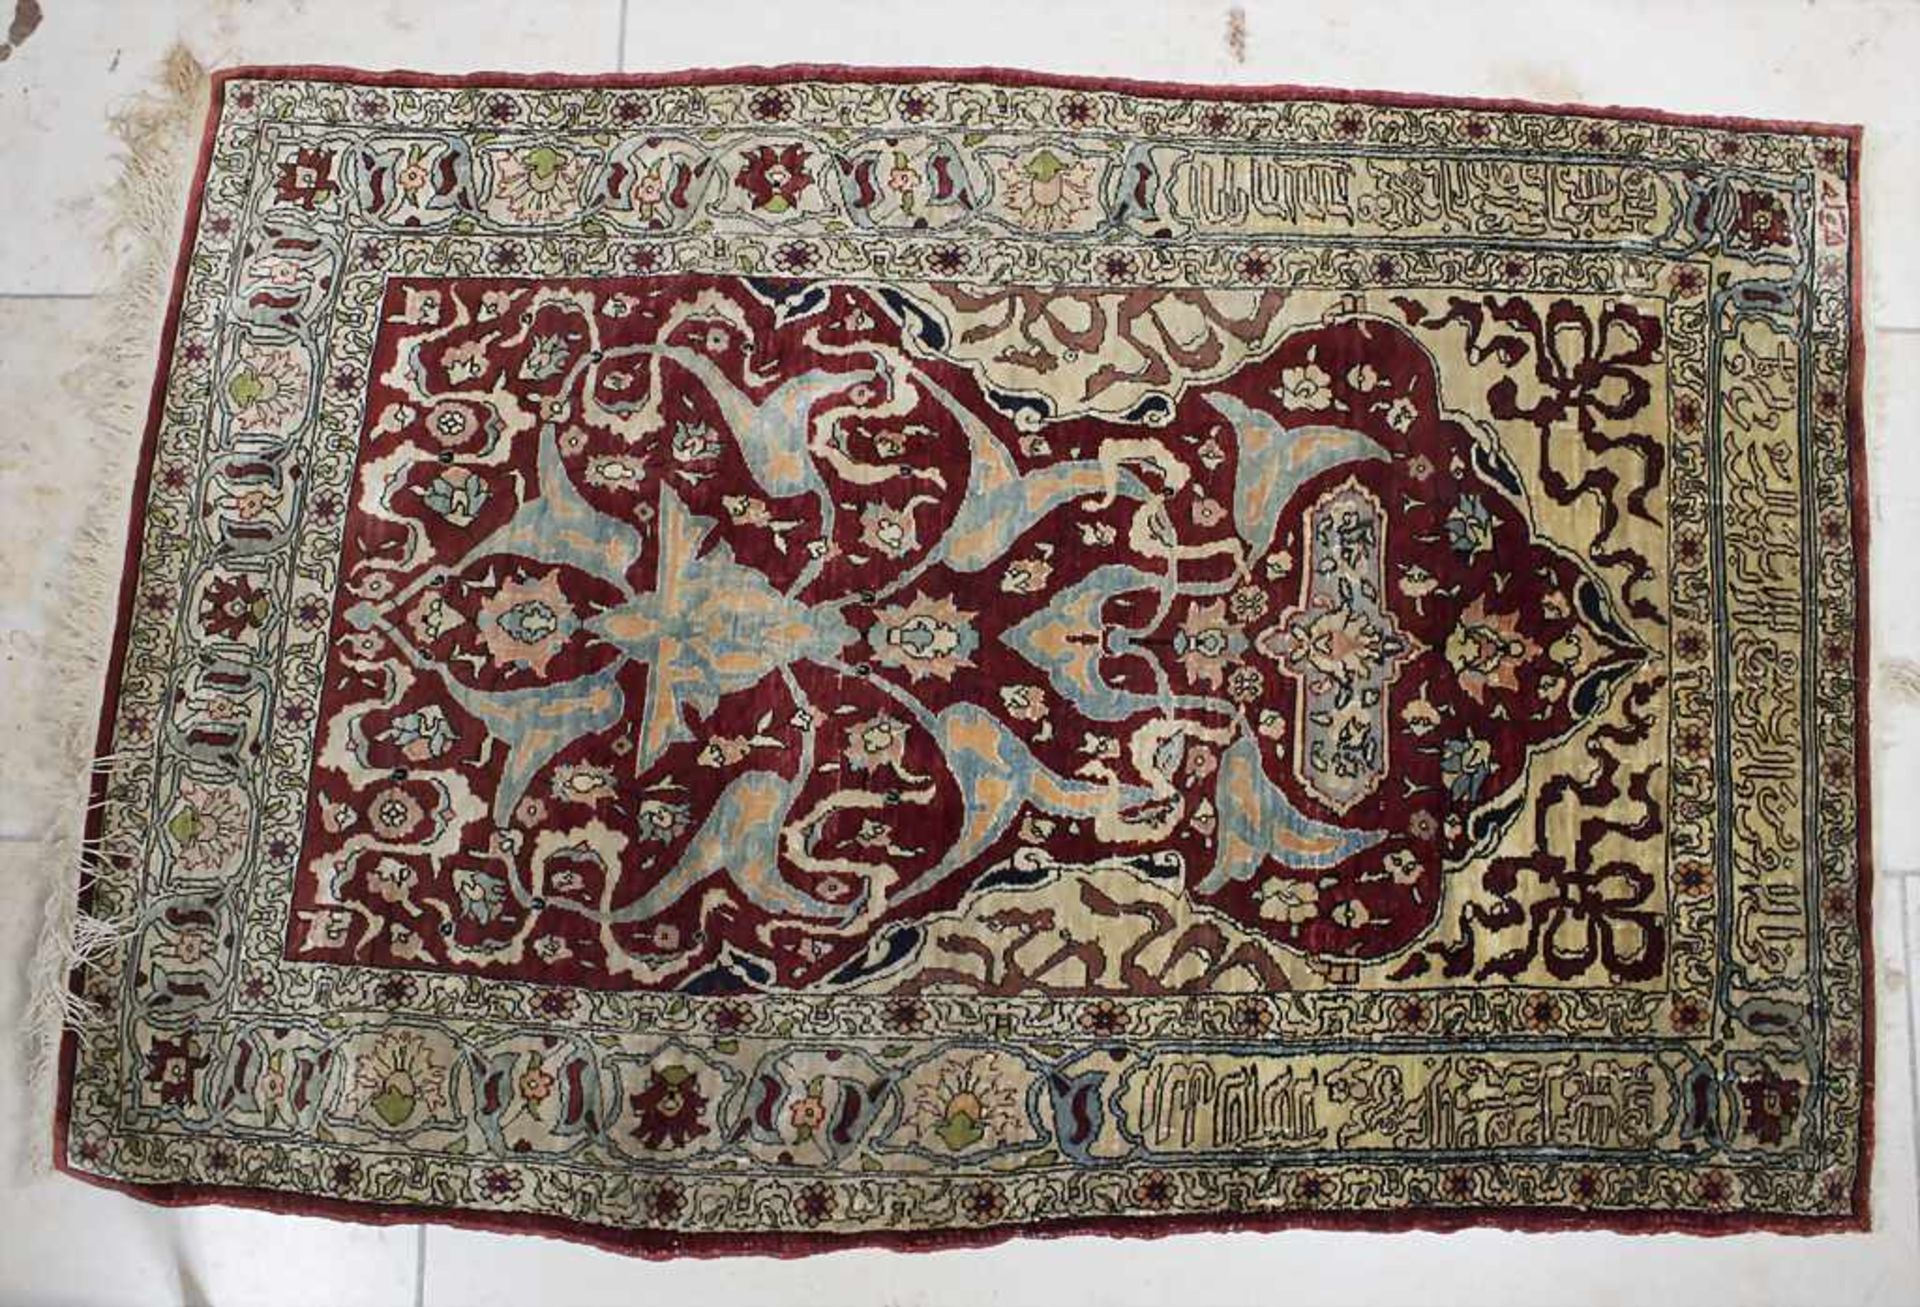 Seidenteppich 'Hereke' mit arabischer Schrift / A silk carpet 'Hereke' with arabic - Image 2 of 5